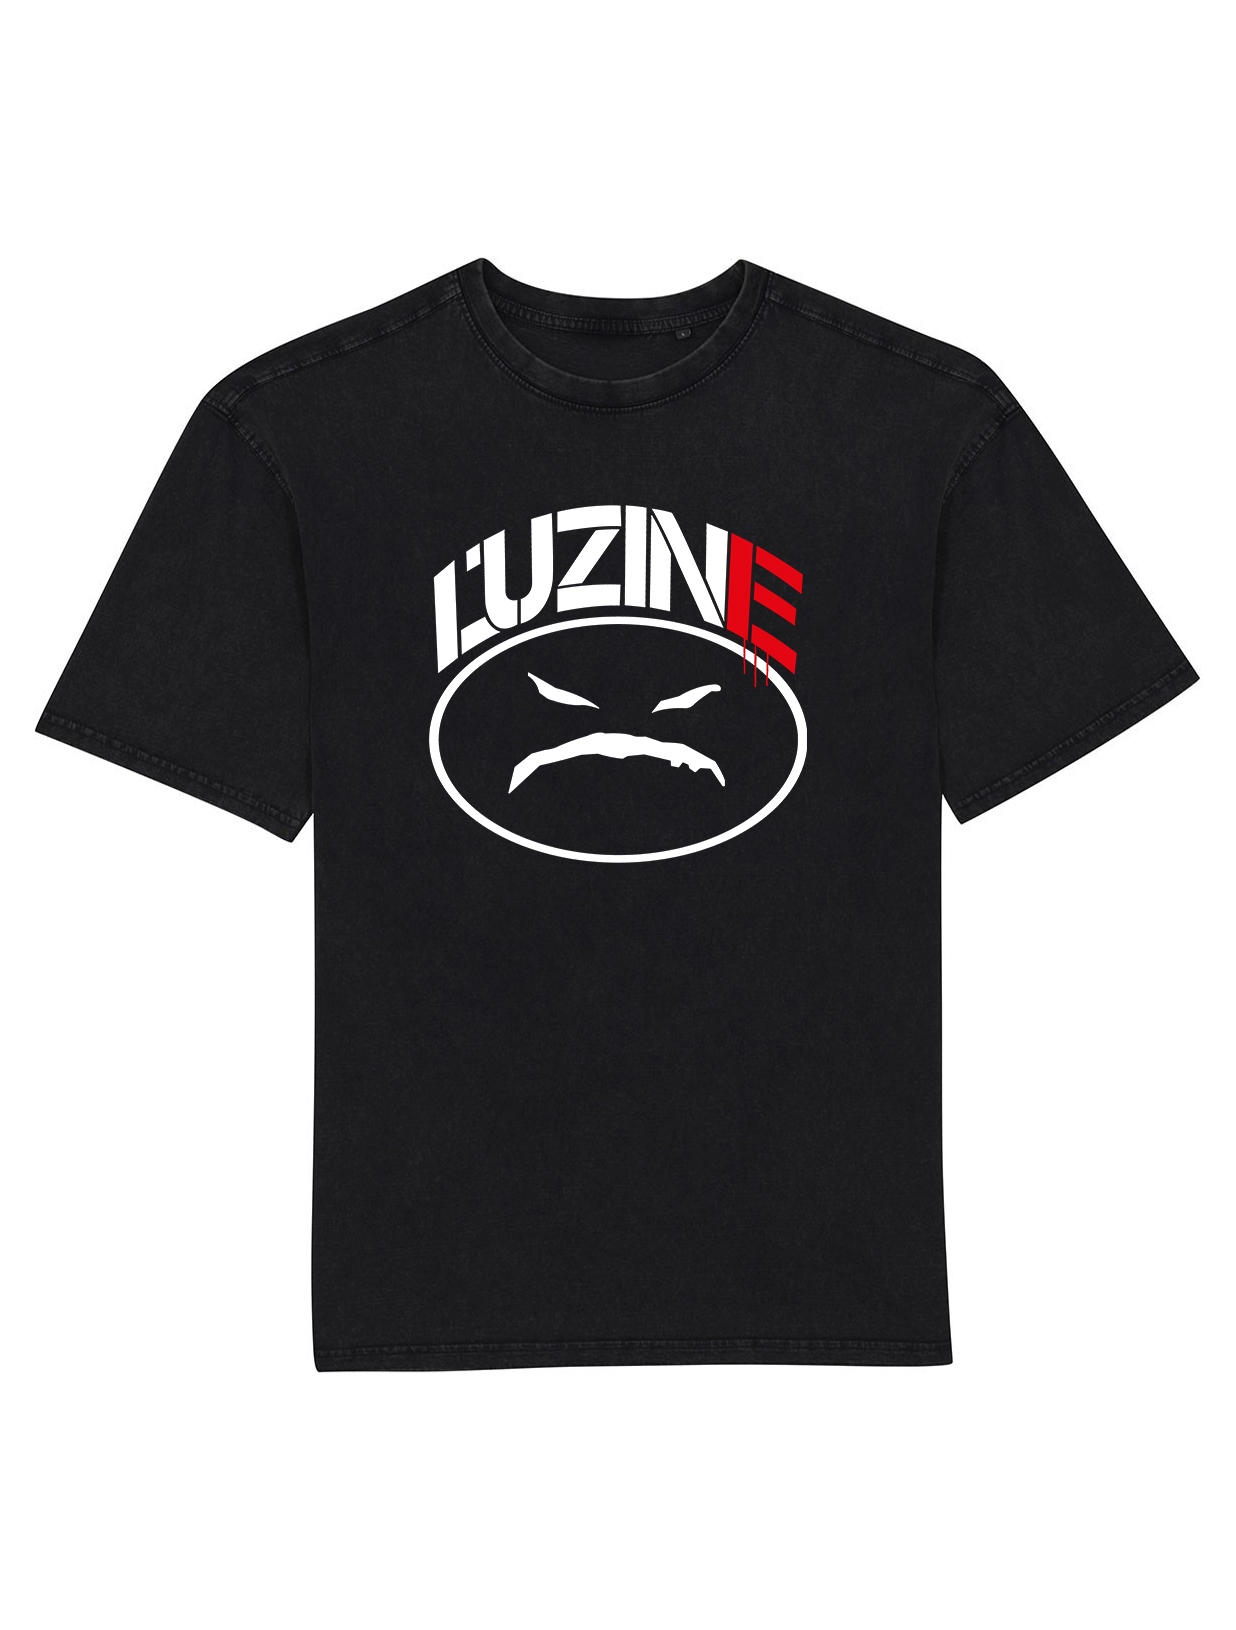 Tshirt Oversize L'uZine x Onyx de l'uzine sur Scredboutique.com